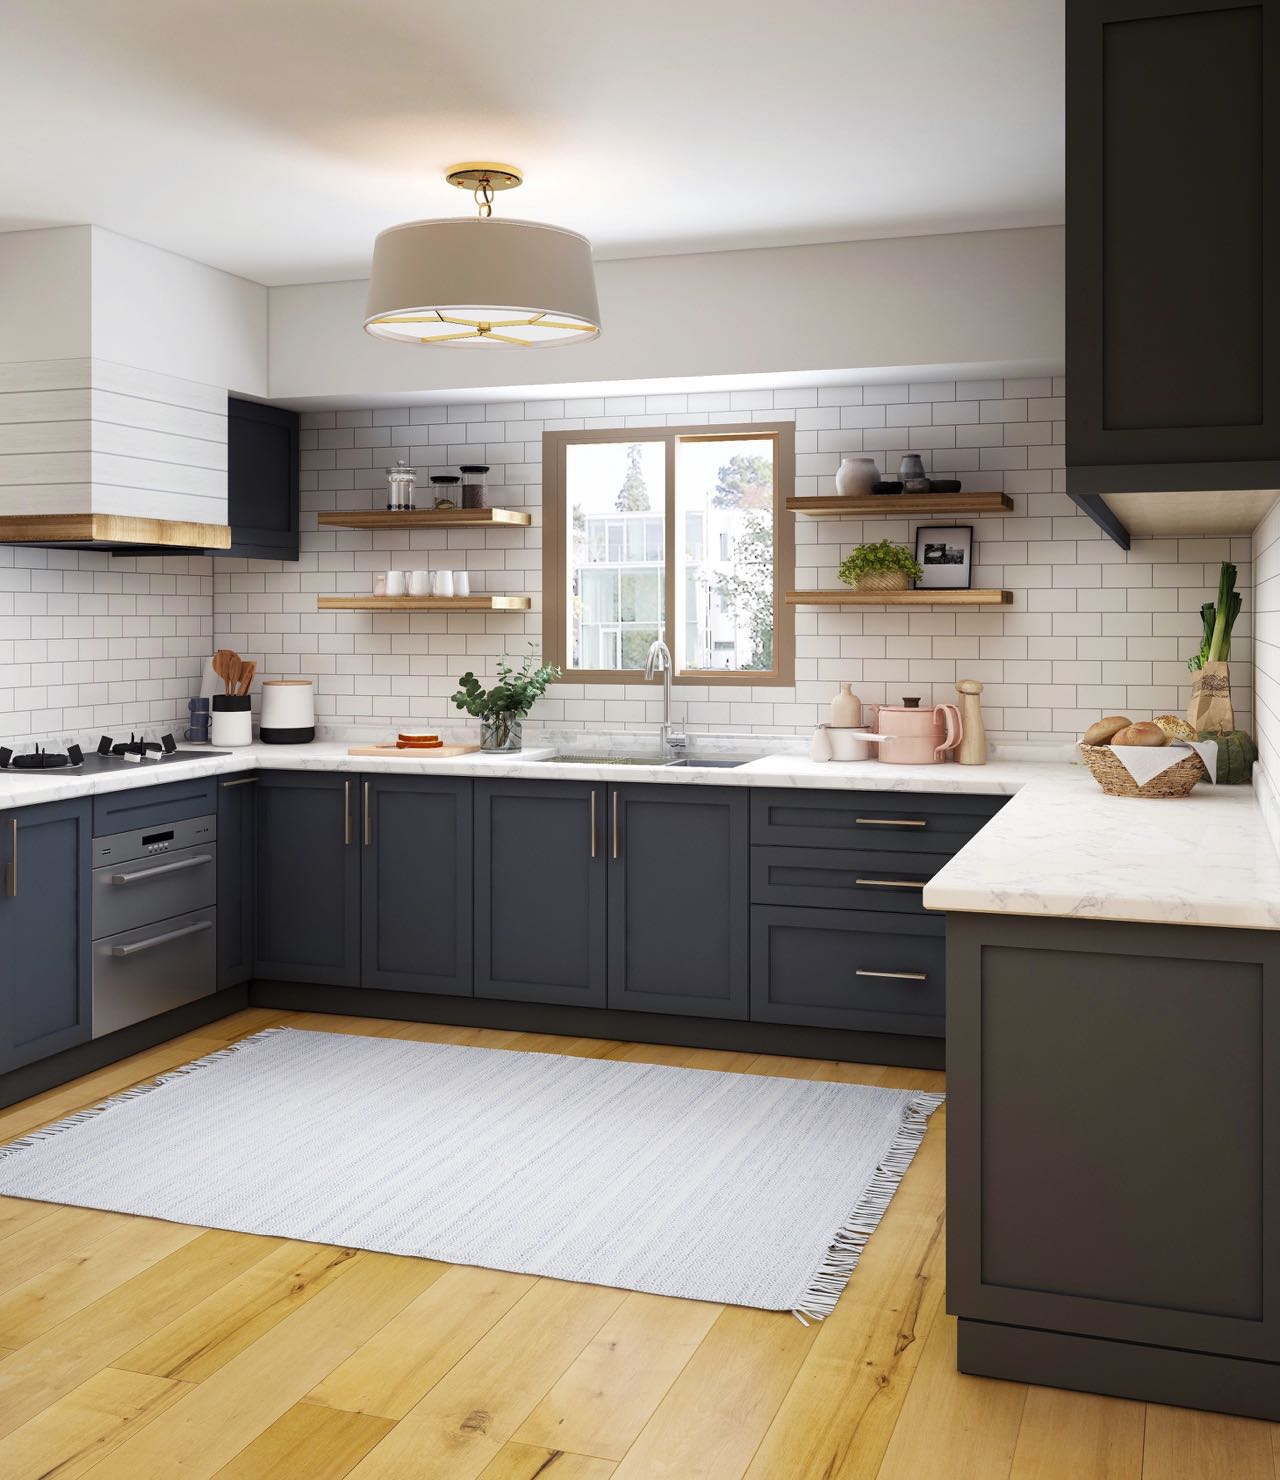 Achten Sie bei Ihren Kleingeräten und allen anderen sichtbaren Dingen in Ihrer Küche darauf, dass es nicht zu vollgestellt wirkt und ein farblich stimmiges Bild ergibt. Foto by Collov Home Design on Unsplash